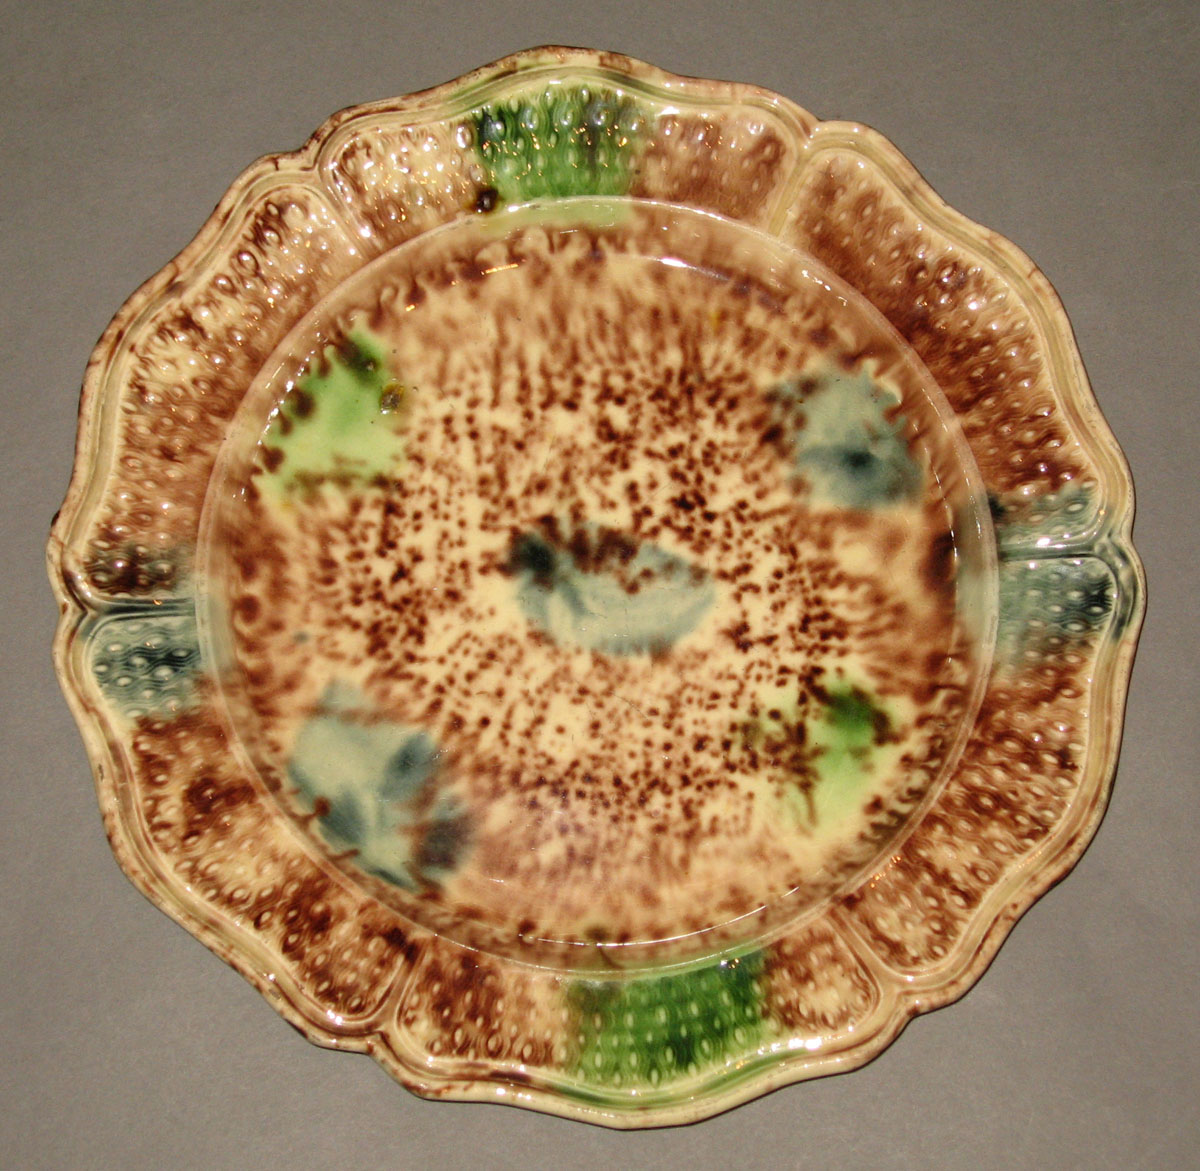 1952.0203.002 Creamware plate